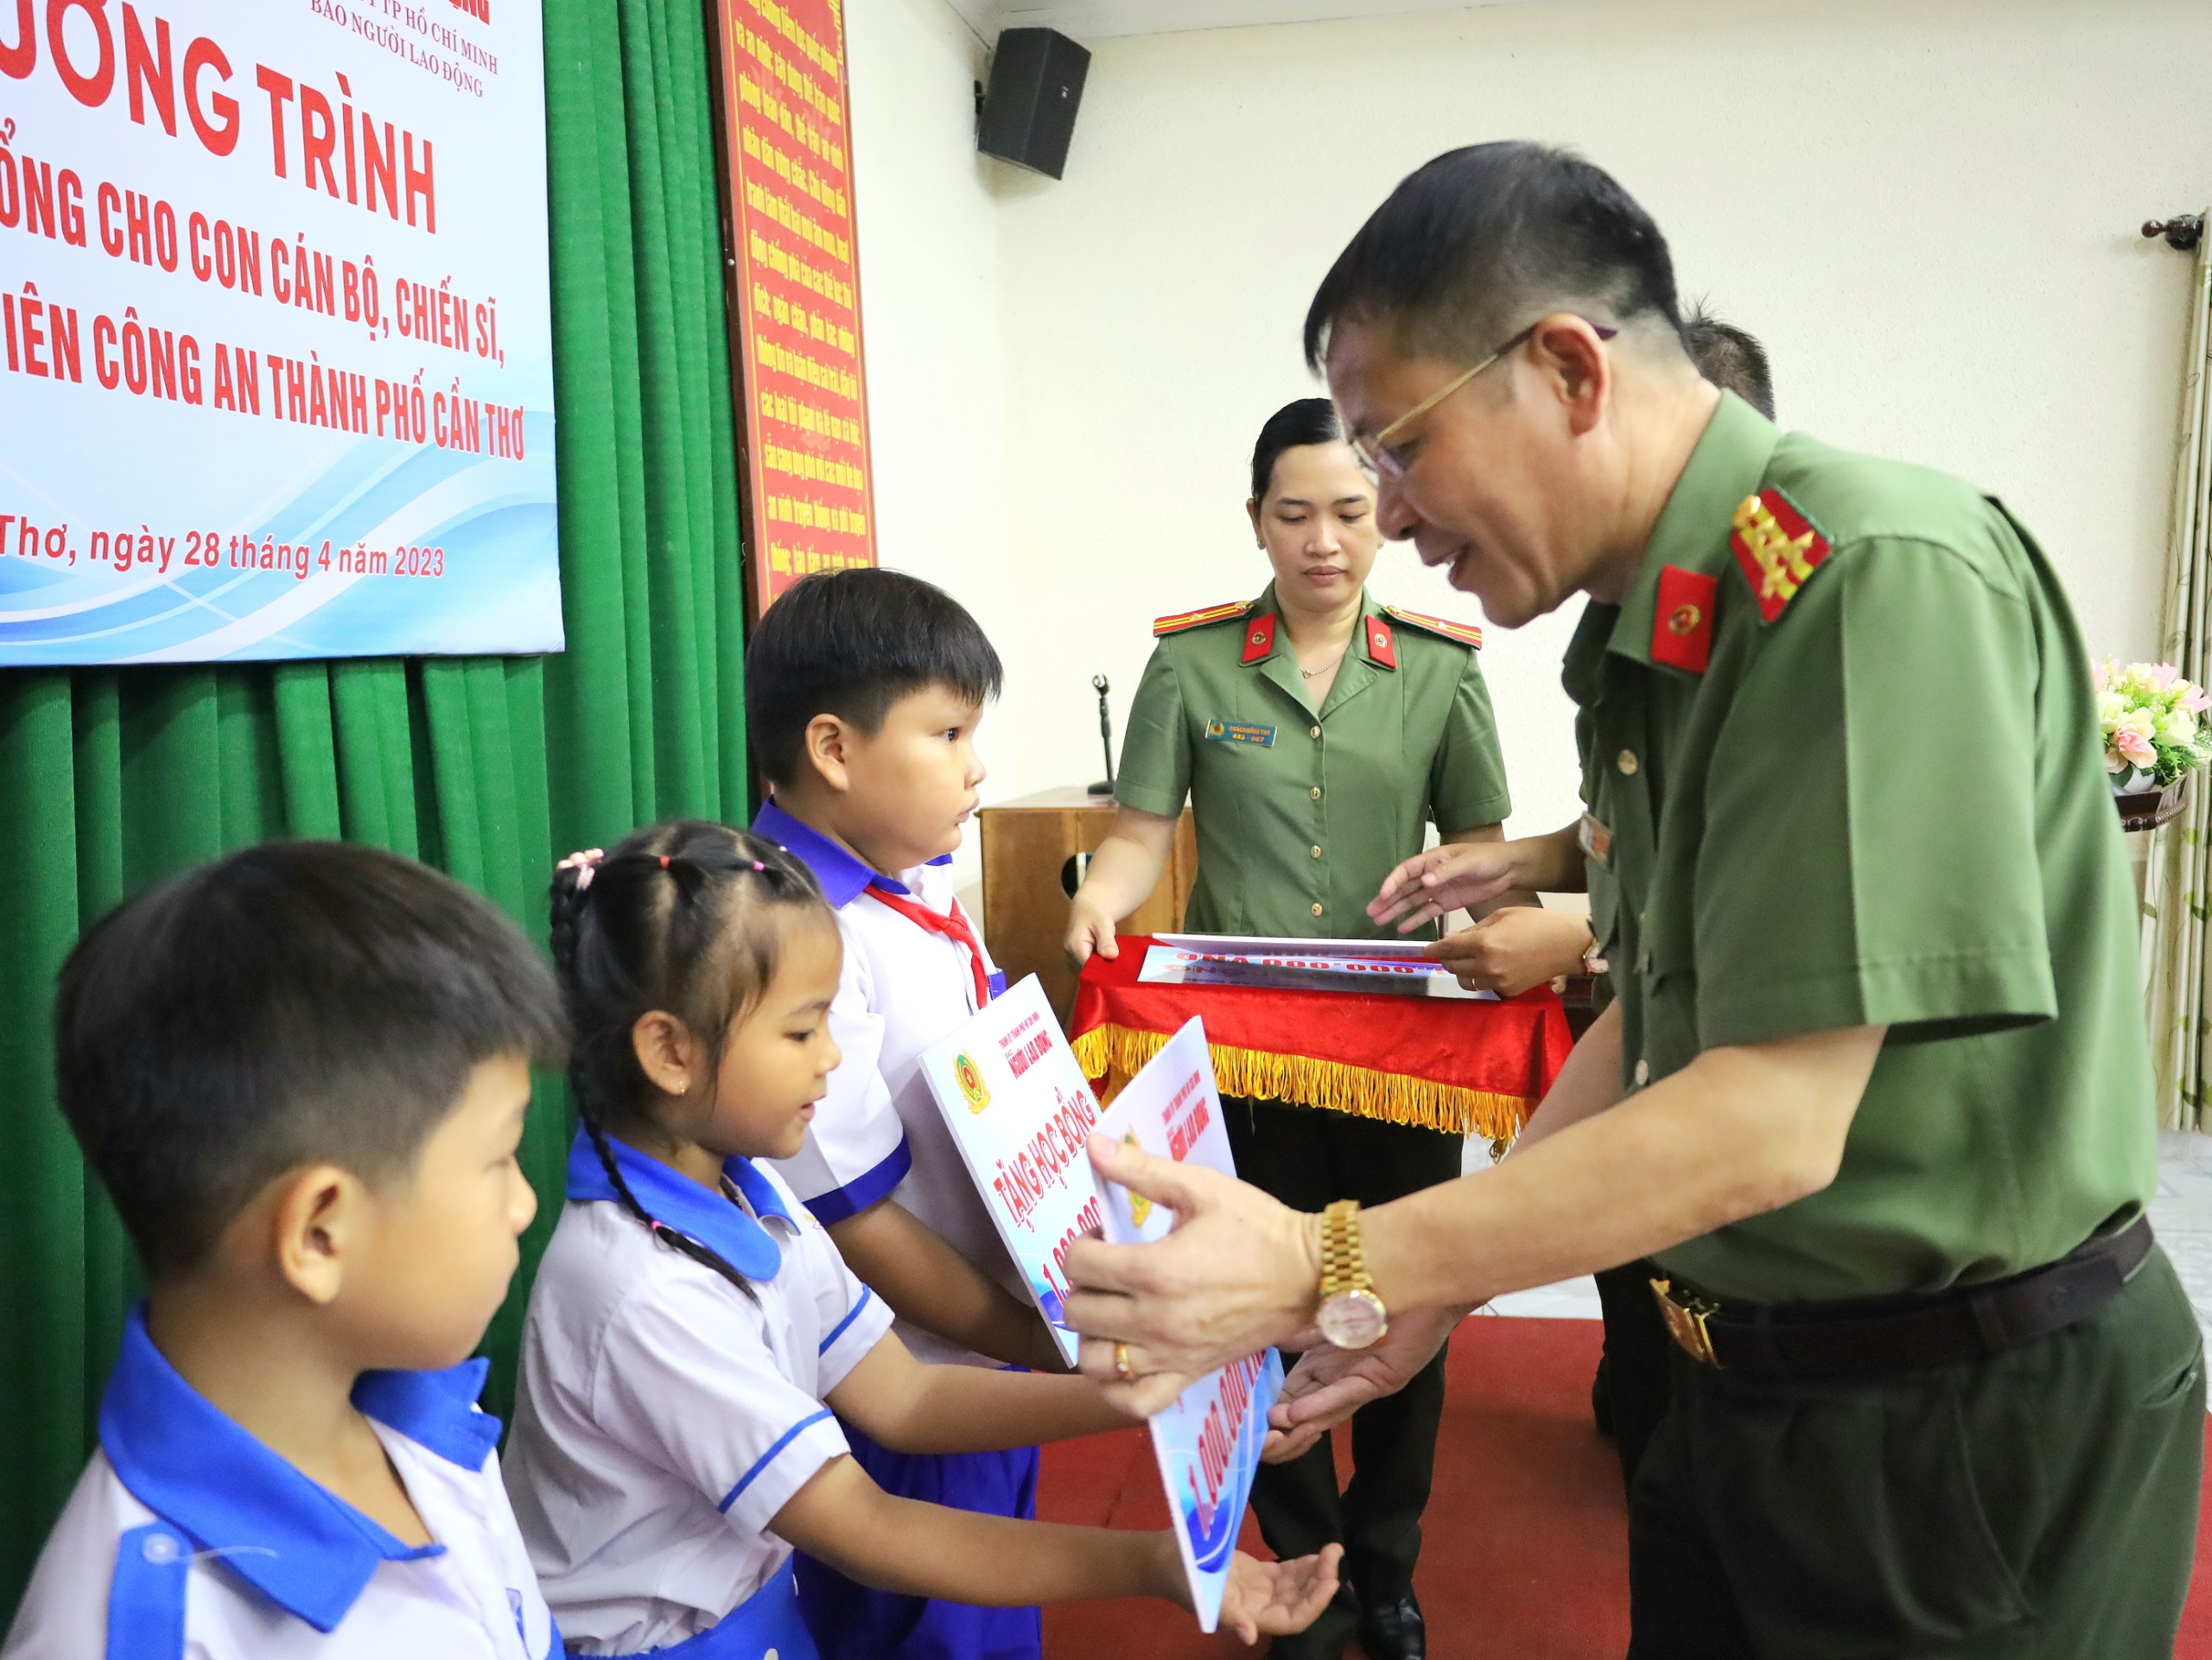 Đại tá Vũ Thành Thức – Phó Giám đốc Công an TP. Cần Thơ trao tặng học bổng cho các em học sinh.